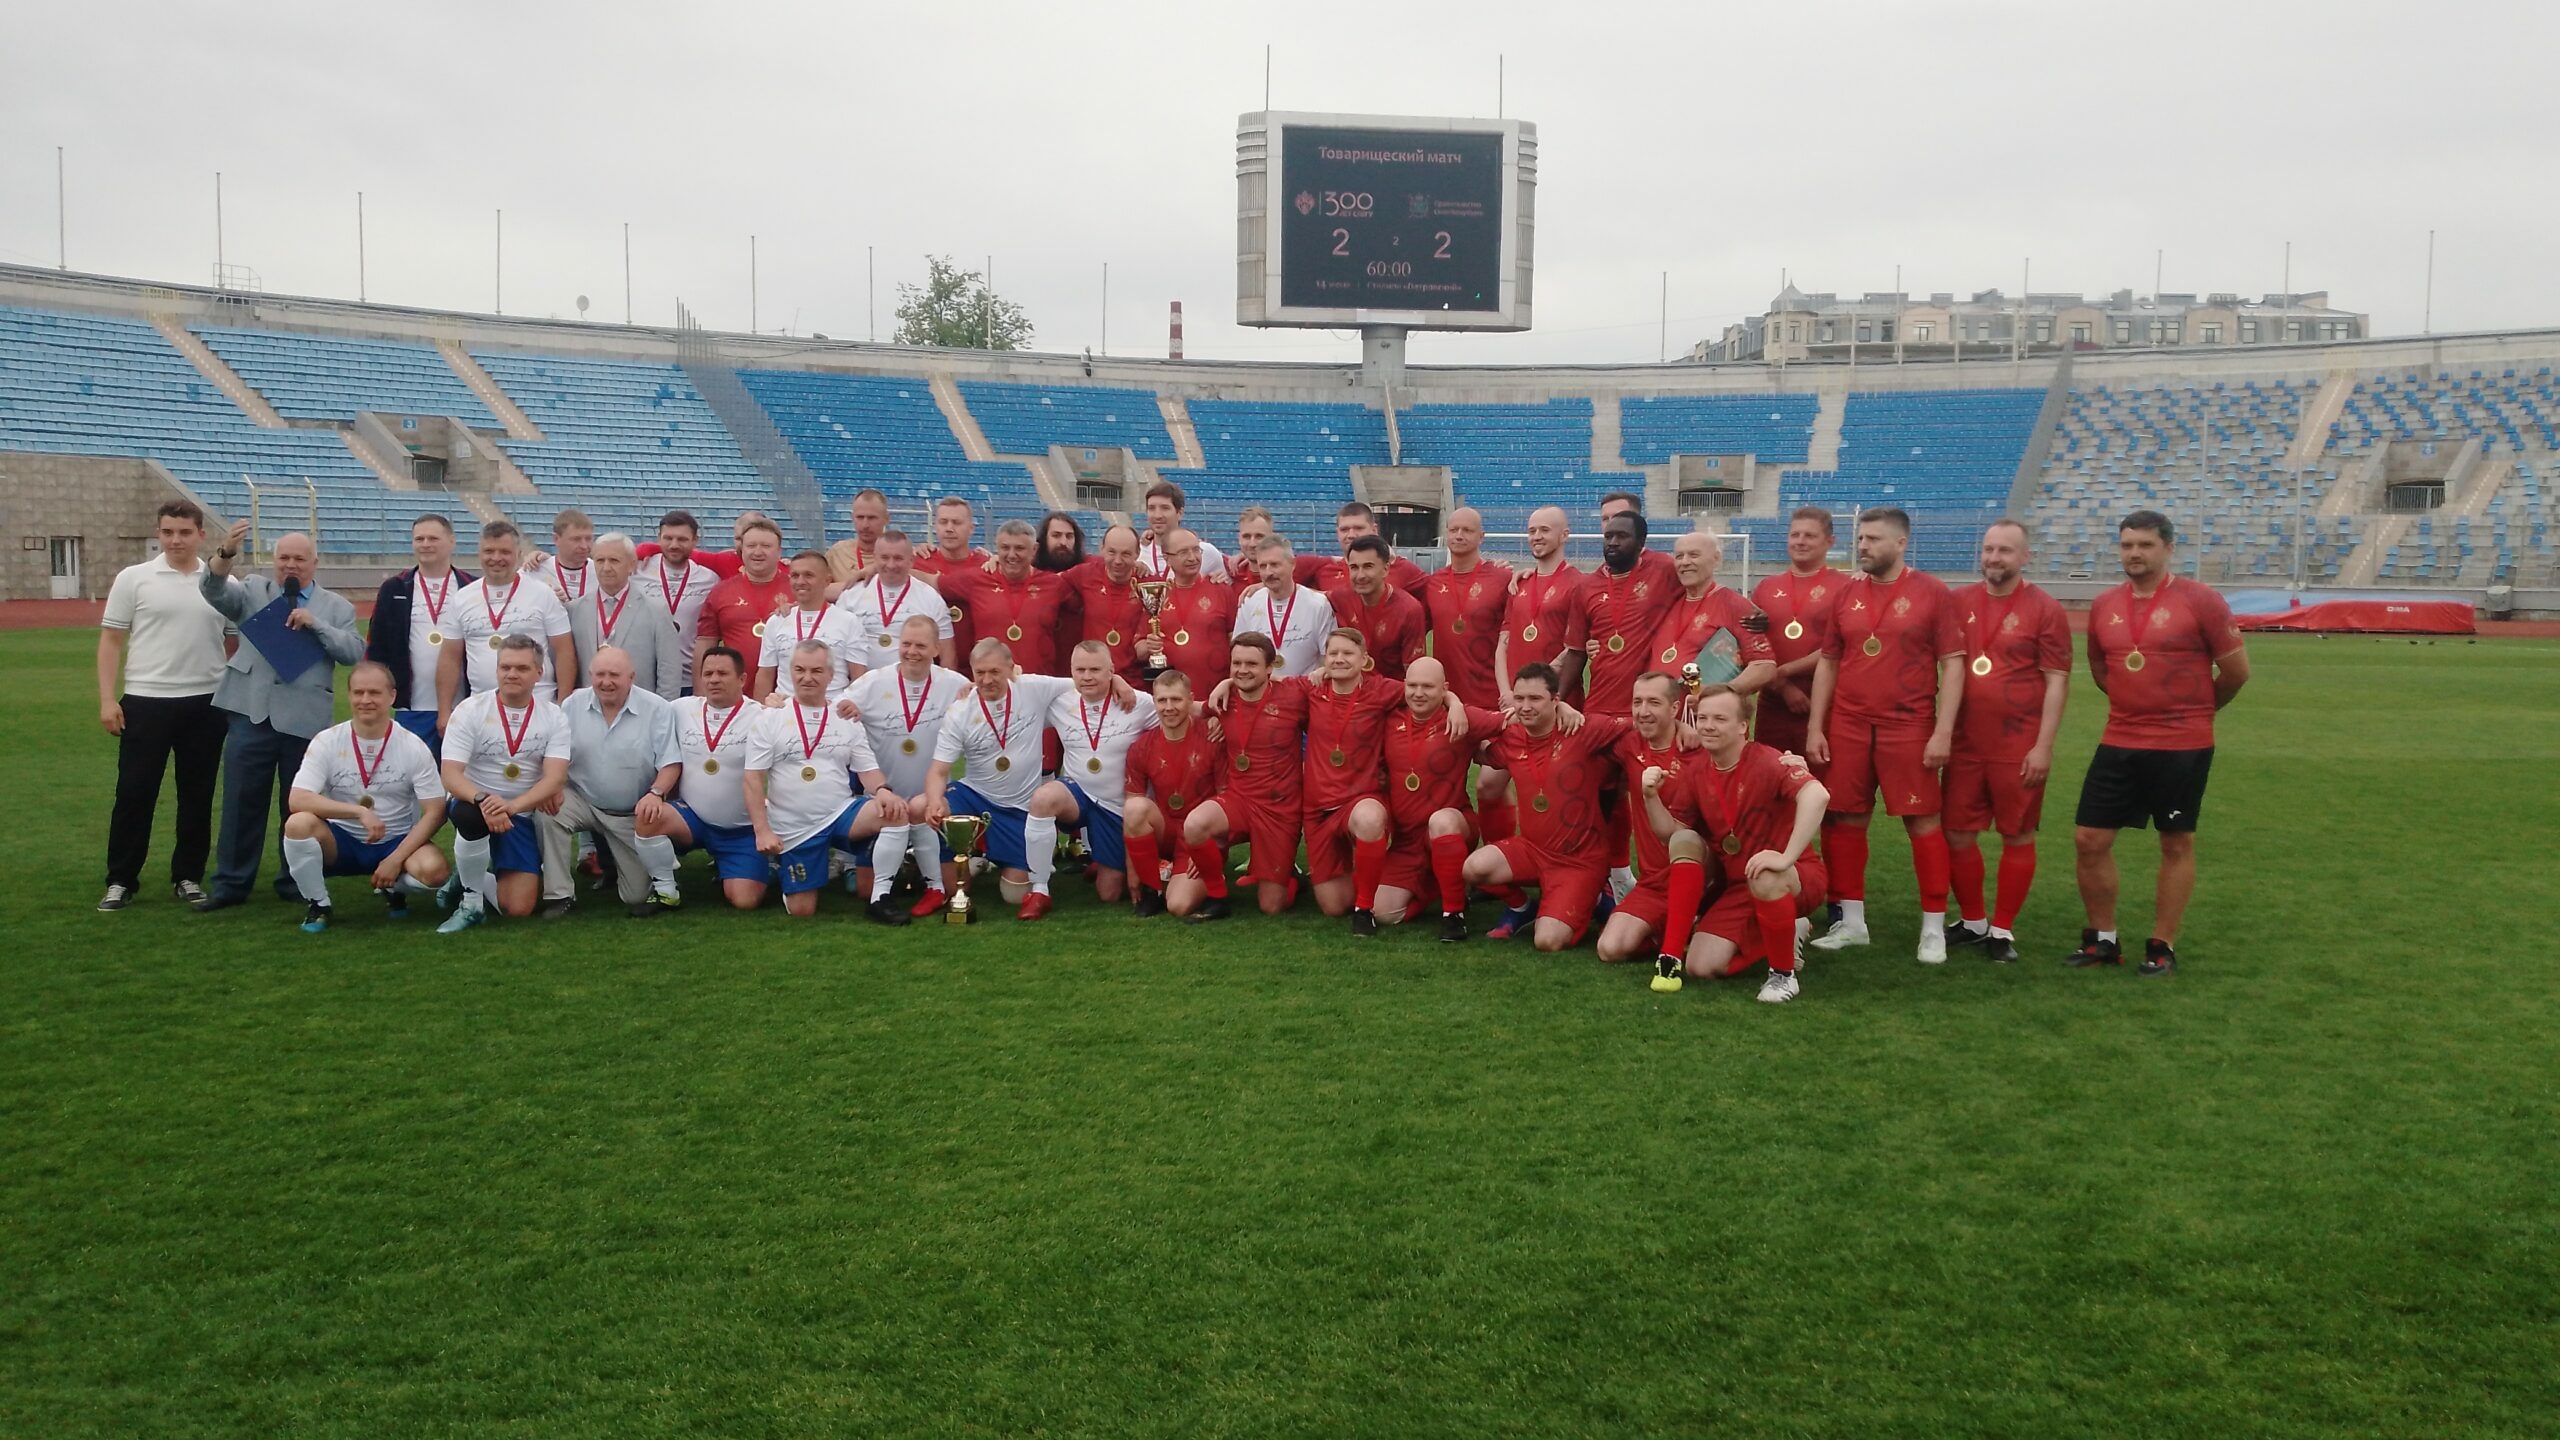 Юбилей петербургского университета отметили футбольным матчем